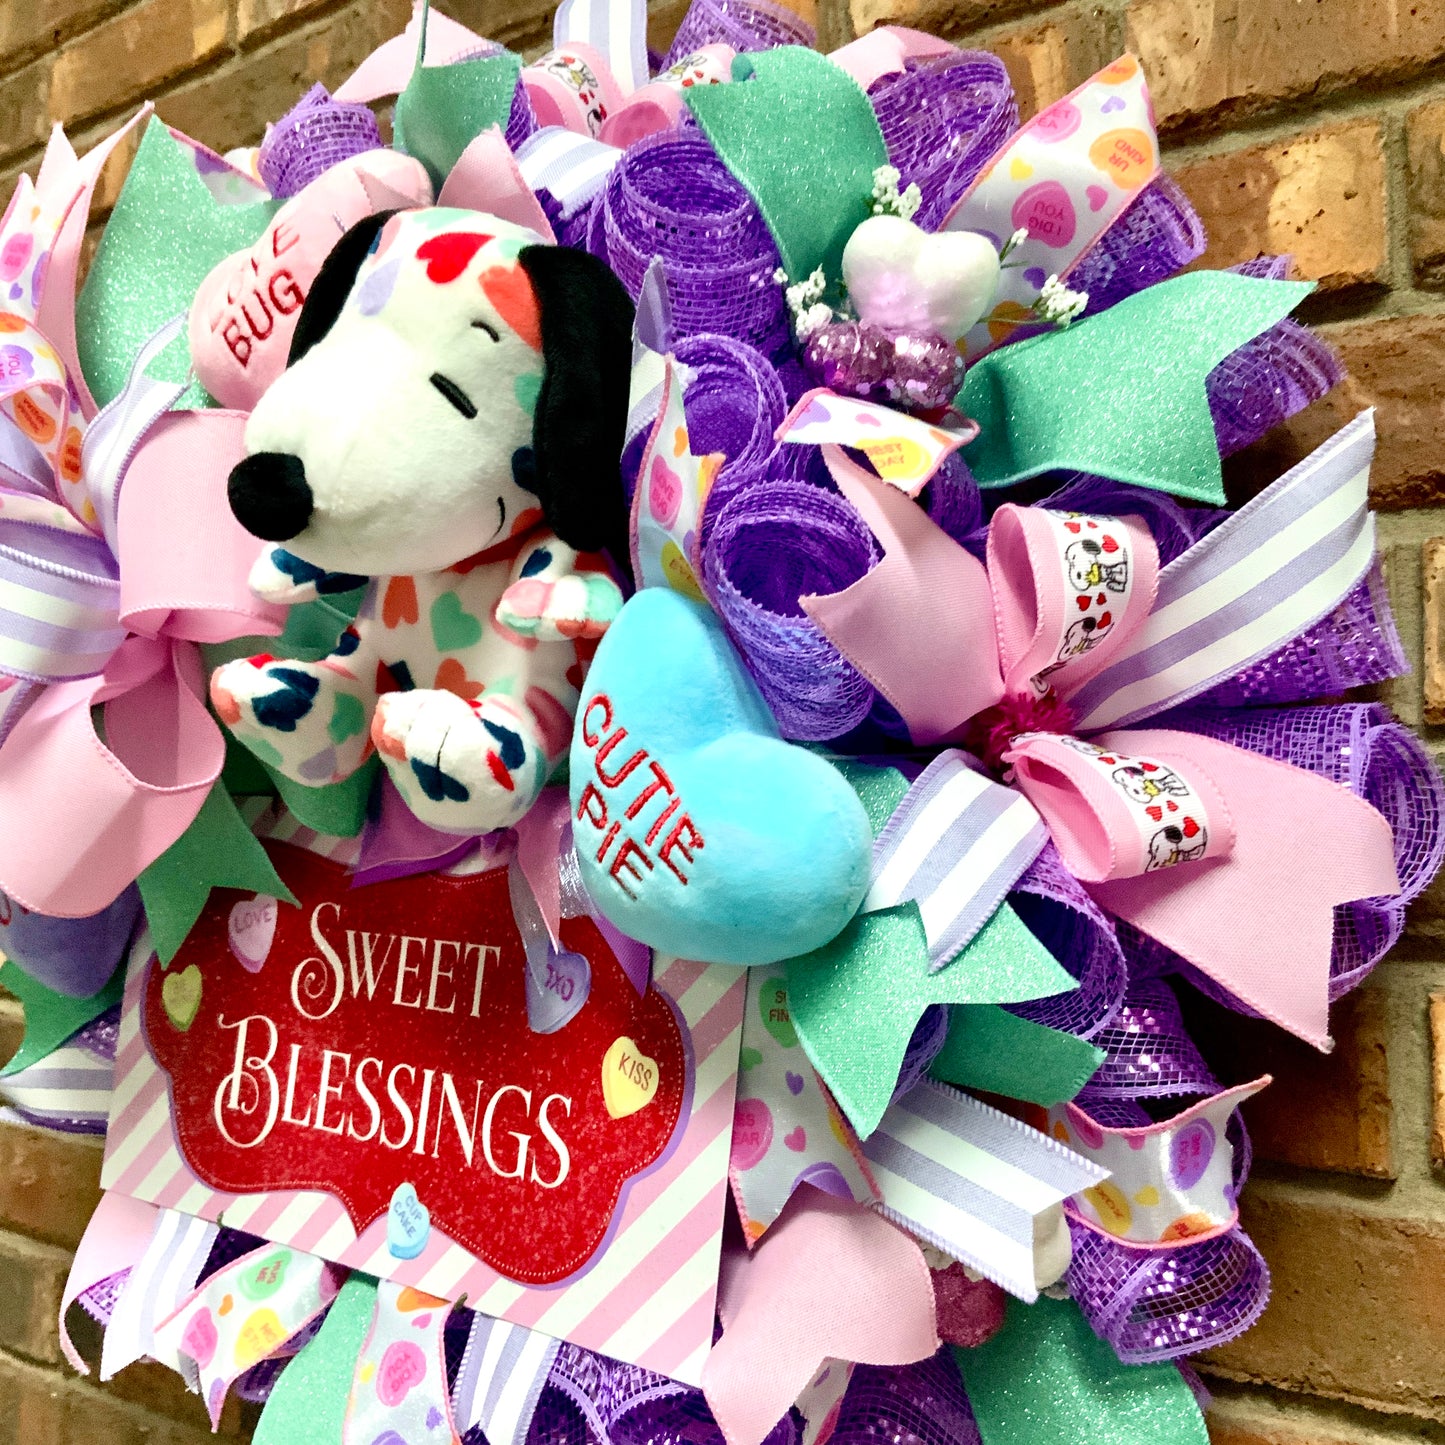 Snoopy Kisses Wreath, Snoopy Wreath, Dog Wreath, Valentine Snoopy Wreath, Dog Kisses Wreath, Valentine Dog Wreath, Conversation Hearts Decor